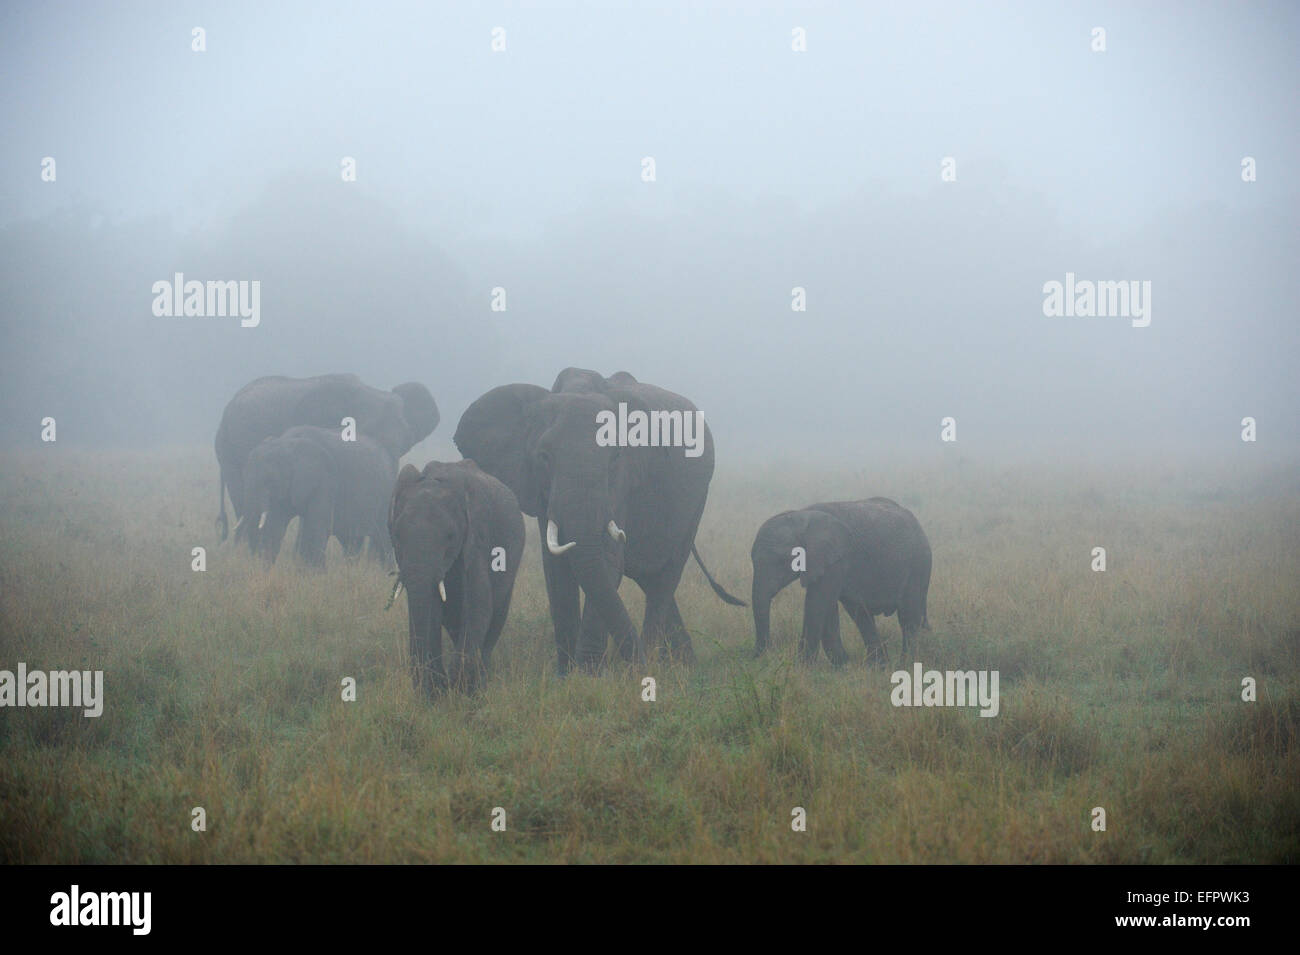 Les éléphants d'Afrique (Loxodonta africana), la famille d'éléphants dans le brouillard, Masai Mara, Kenya Banque D'Images